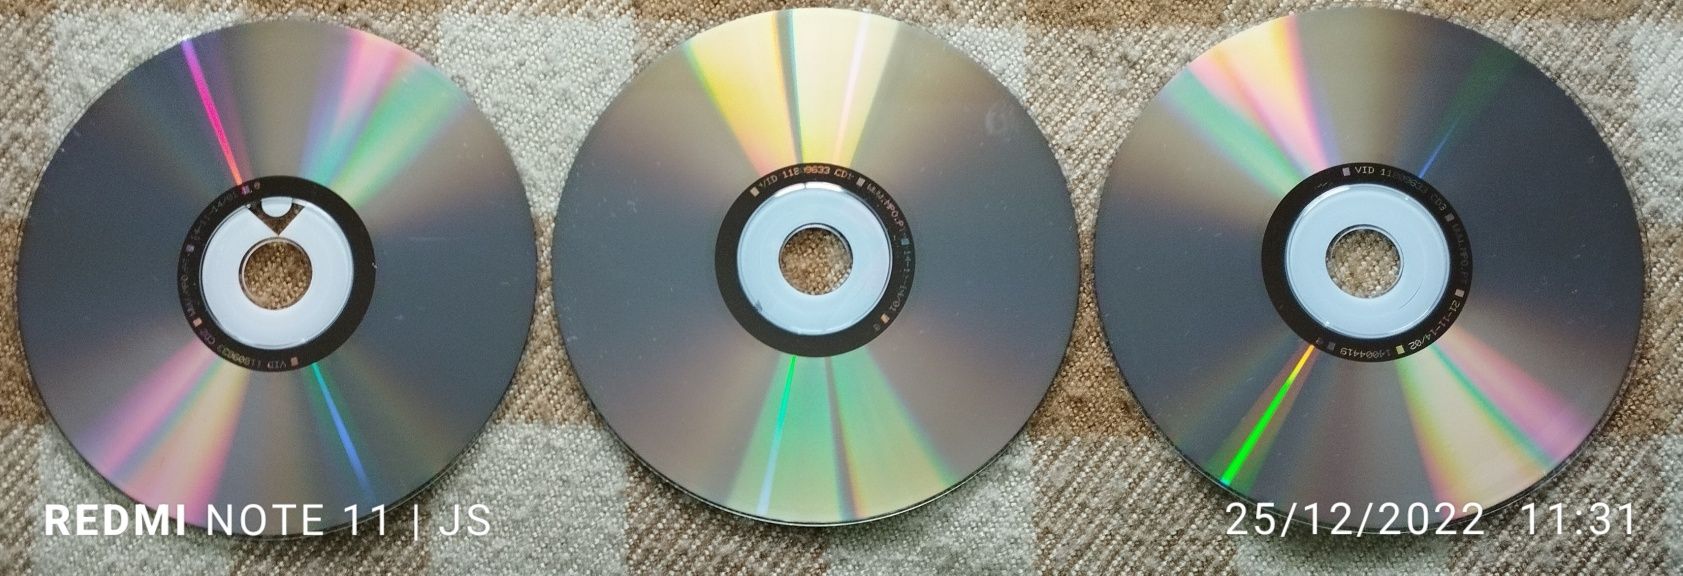 CD Anos 70, 80 e 90